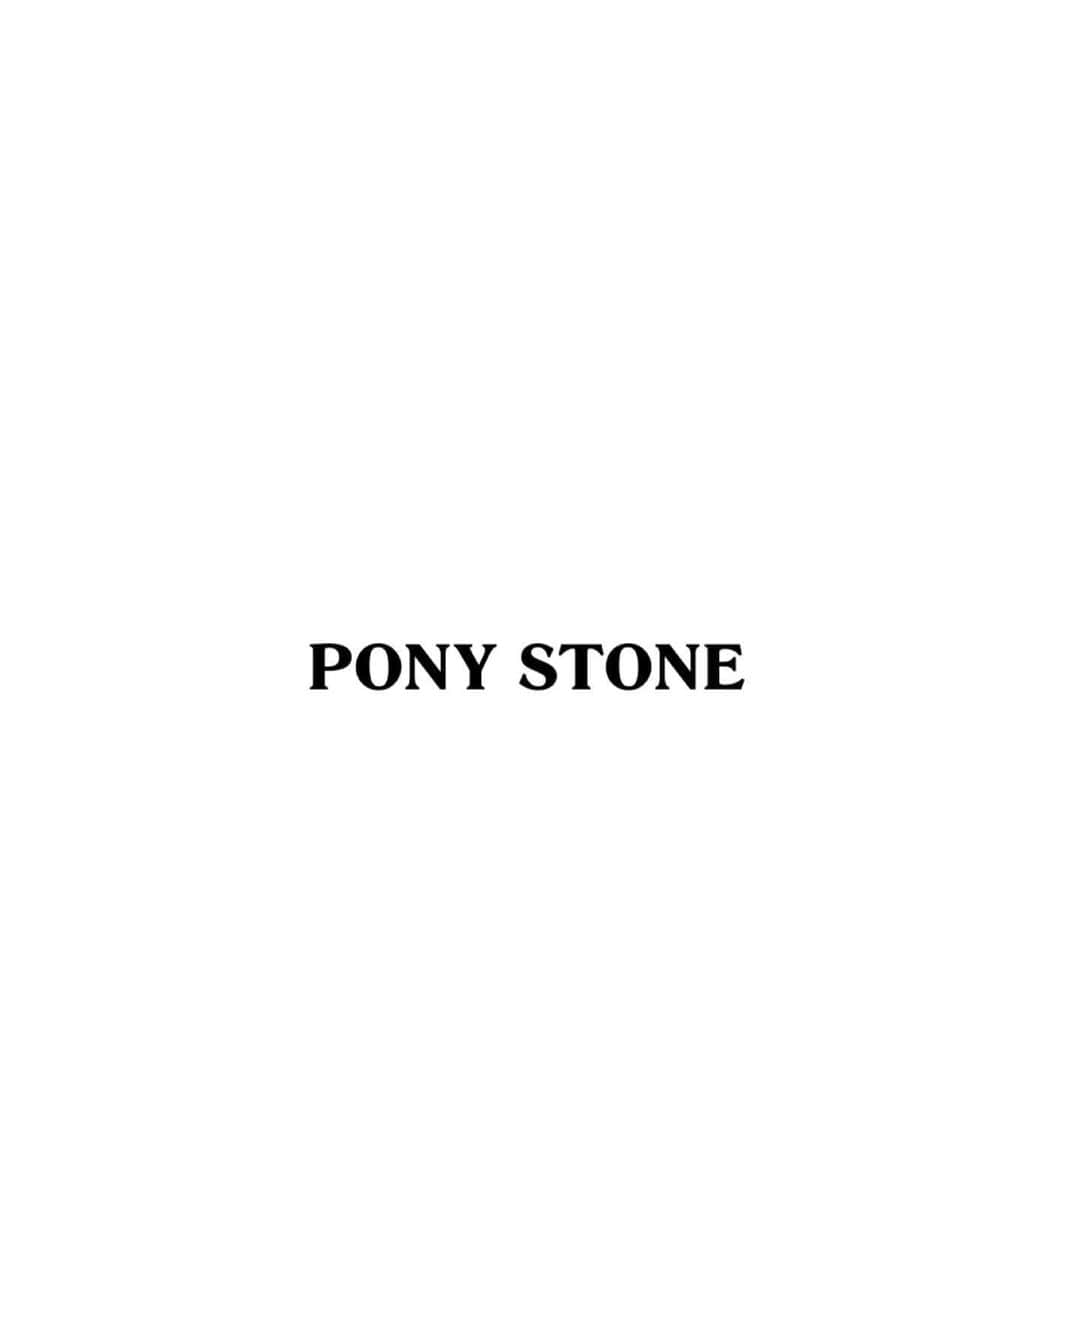 PONY STONEさんのインスタグラム写真 - (PONY STONEInstagram)「𝐏𝐎𝐍𝐘 𝐒𝐓𝐎𝐍𝐄 𝐒𝐀𝐅𝐄𝐓𝐘 𝐅𝐋𝐈𝐑𝐓 𝐊𝐈𝐓 🖤 1 𝐍𝐀𝐈𝐕𝐄 𝐟𝐚𝐜𝐞 𝐬𝐡𝐢𝐞𝐥𝐝 680 𝐭𝐡𝐛 หน้ากากอนามัย FACE SHIELD รูปหัวใจ(สีดำ/สีแดง) ขนาด Face shield length : 8” / width : 10” 2 𝐏𝐔𝐑𝐄 𝐟𝐚𝐜𝐞 𝗺𝐚𝐬𝐤 280 𝐭𝐡𝐛 หน้ากากอนามัยผ้านีโอพรีน สกรีนโลโก้ PONY STONE พร้อมสายคล้องคอ ขนาด Width : 26 cm. / High : 8.5 cm. 3 𝐁𝐔𝐋𝐋𝐄𝐓  𝐩𝐮𝐬𝐡 𝐬𝐭𝐢𝐜𝐤 680 𝐭𝐡𝐛 อุปกรณ์กดปุ่มอนามัย สำหรับพกพา ช่วยลดความเสี่ยงต่อการสัมผัสเชื้อโรคได้และสามารถเป็นไฟแช็ก / ไฟฉาย  4 𝐏𝐑𝐈𝐎𝐑𝐈𝐓𝐘 𝐟𝐚𝐜𝐞 𝐜𝗼𝐯𝐞𝐫 𝐭𝐞𝐞 1680 𝐭𝐡𝐛 เสื้อยืดแขนสั้นคอMASKสามารถใส่ปิดขึ้นมาบริเวณใบหน้าได้ ผ้านุ่มใส่สบาย และมีช่องใส่ขวดสเปรย์แอลกอฮอล์ 5 𝐅𝐋𝐈𝐑𝐓 𝐭𝗼𝐭𝐞 𝐛𝐚𝐠 680𝐭𝐡𝐛 กระเป๋าผ้าสำหรับใส่อุปกรณ์ที่ป้องกันเชื้อโรค เชื้อไวรัส ที่สะพายออกจากบ้านได้อย่างมั่นใจ และช่องแบ่งใส่ของ 3 ช่องด้านใน 6 𝐊𝐈𝐓𝐙 𝐠𝐥𝗼𝐯𝐞 𝐛𝗼𝐱/ 3 𝐛𝐥𝐚𝐜𝐤 𝐫𝐮𝐛𝐛𝐞𝐫  𝐠𝐥𝗼𝐯𝐞𝐬 480 𝐭𝐡𝐛 กล่องใส่ถุงมือยางอนามัย กล่องที่ใส่ถุงมือยางที่พกออกจากบ้านได้โดยหยิบมาใช้ในการสัมผัสสิ่งของโดยตรง ลดการสัมผัสเชื้อโรค 1 กล่องมีถุงมือให้ 3 ชิ้น 7 𝐒𝐏𝐑𝐄𝐀𝐃𝐈𝐍𝐆 𝐋𝐎𝐕𝐄 3 𝐛𝗼𝐭𝐭𝐥𝐞𝐬 𝐚𝐥𝐜𝗼𝐡𝗼𝐥 𝐬𝐩𝐫𝐚𝐲 75% 320 𝐭𝐡𝐛 Spreading love 🤍 ALCOHOL HAND SPRAY 🤍 มีส่วนผสมแอลกอฮอล์ 75% Food grade ใช้ทำความสะอาดมือ และ สิ่งของต่างๆรอบตัว เพื่อ ฆ่าเชื้อโรค-ไวรัสได้ถึง99.99%  𝐈𝐍𝐃𝐈𝐕𝐈𝐃𝐔𝐀𝐋 4,880𝐭𝐡𝐛  มูลค้าสินค้ารวม 4,880 thb 𝐒𝐞𝐭 3,880𝐭𝐡𝐛  ราคาขายยกเซ็ต 3,880 thb สามารถซื้อแยกชิ้นได้  𝐀𝐕𝐀𝐈𝐋𝐀𝐁𝐋𝐄 𝐏𝐎𝐍𝐘 𝐒𝐓𝐎𝐍𝐄 @centralworld  𝐎𝐑 𝐎𝐑𝐃𝐄𝐑 𝐕𝐈𝐀 𝐋𝐈𝐍𝐄 @ponystone  #ponystone」6月11日 14時21分 - ponystone_official